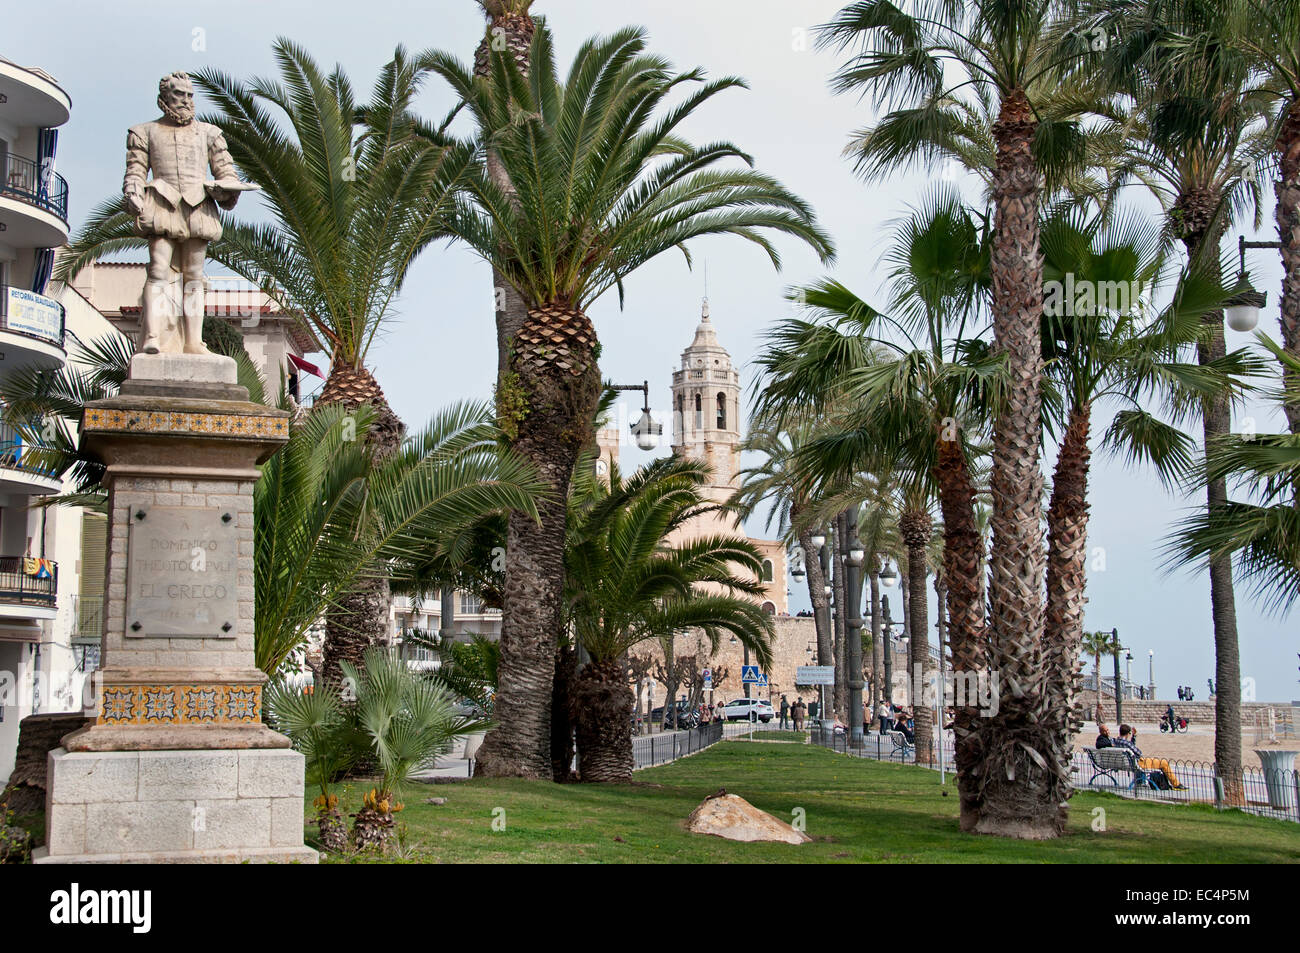 La plage de Sitges palmeraie Espagne Spanish Town Banque D'Images